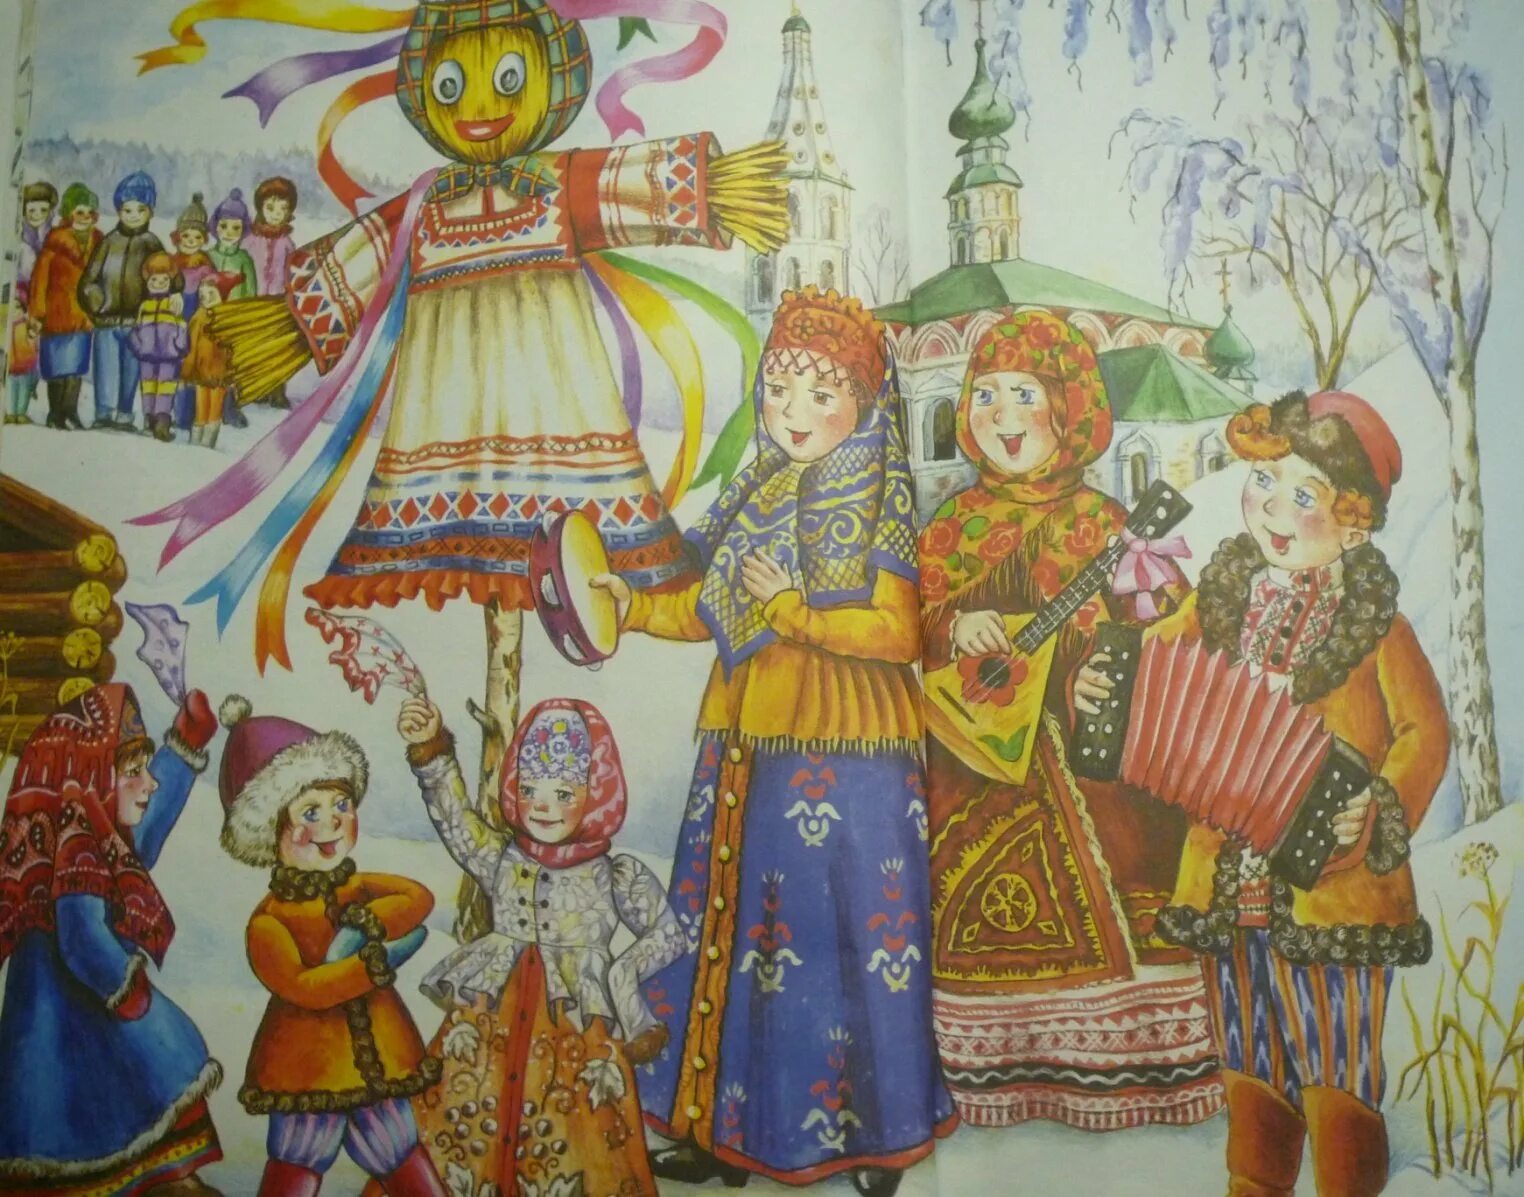 Н. Фетисов - "широкая Масленица". Масленичные гуляния в древней Руси. Народные рисунки детей